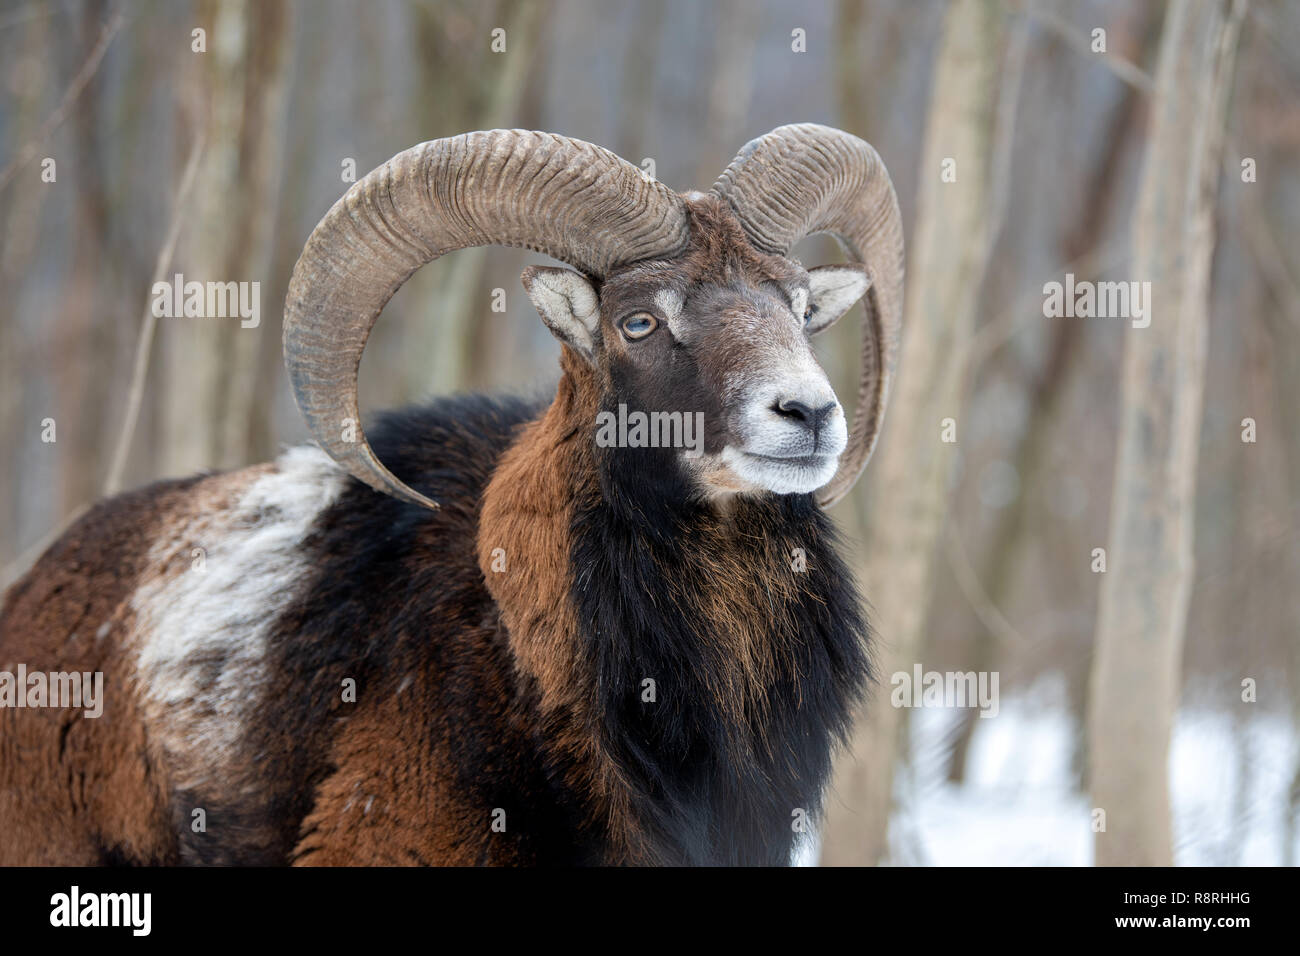 Portrait d'hiver de gros Mouflons animal. Mouflons, Ovis orientalis, forêt-duc d'animal dans l'habitat de la nature Banque D'Images